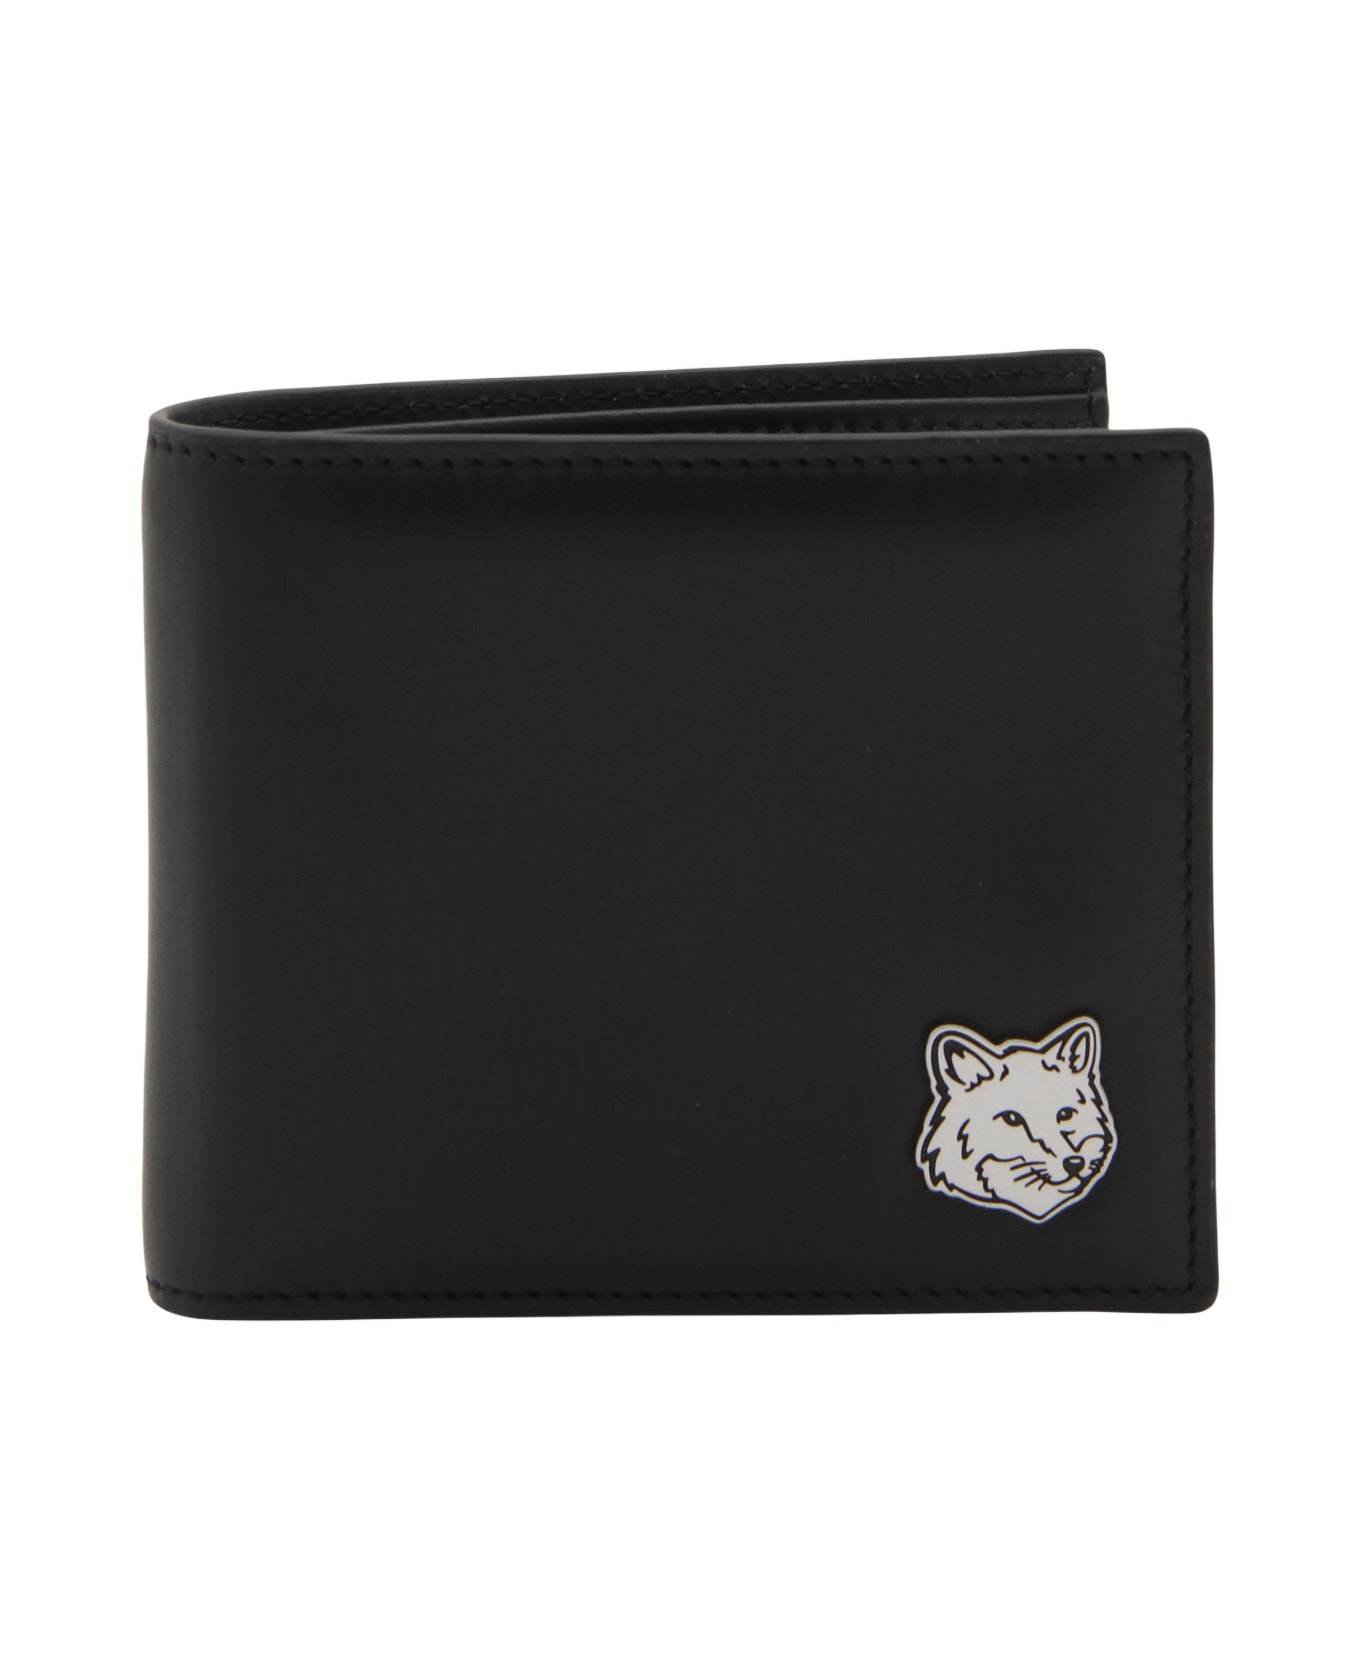 Maison Kitsuné Black Leather Wallet - Black 財布